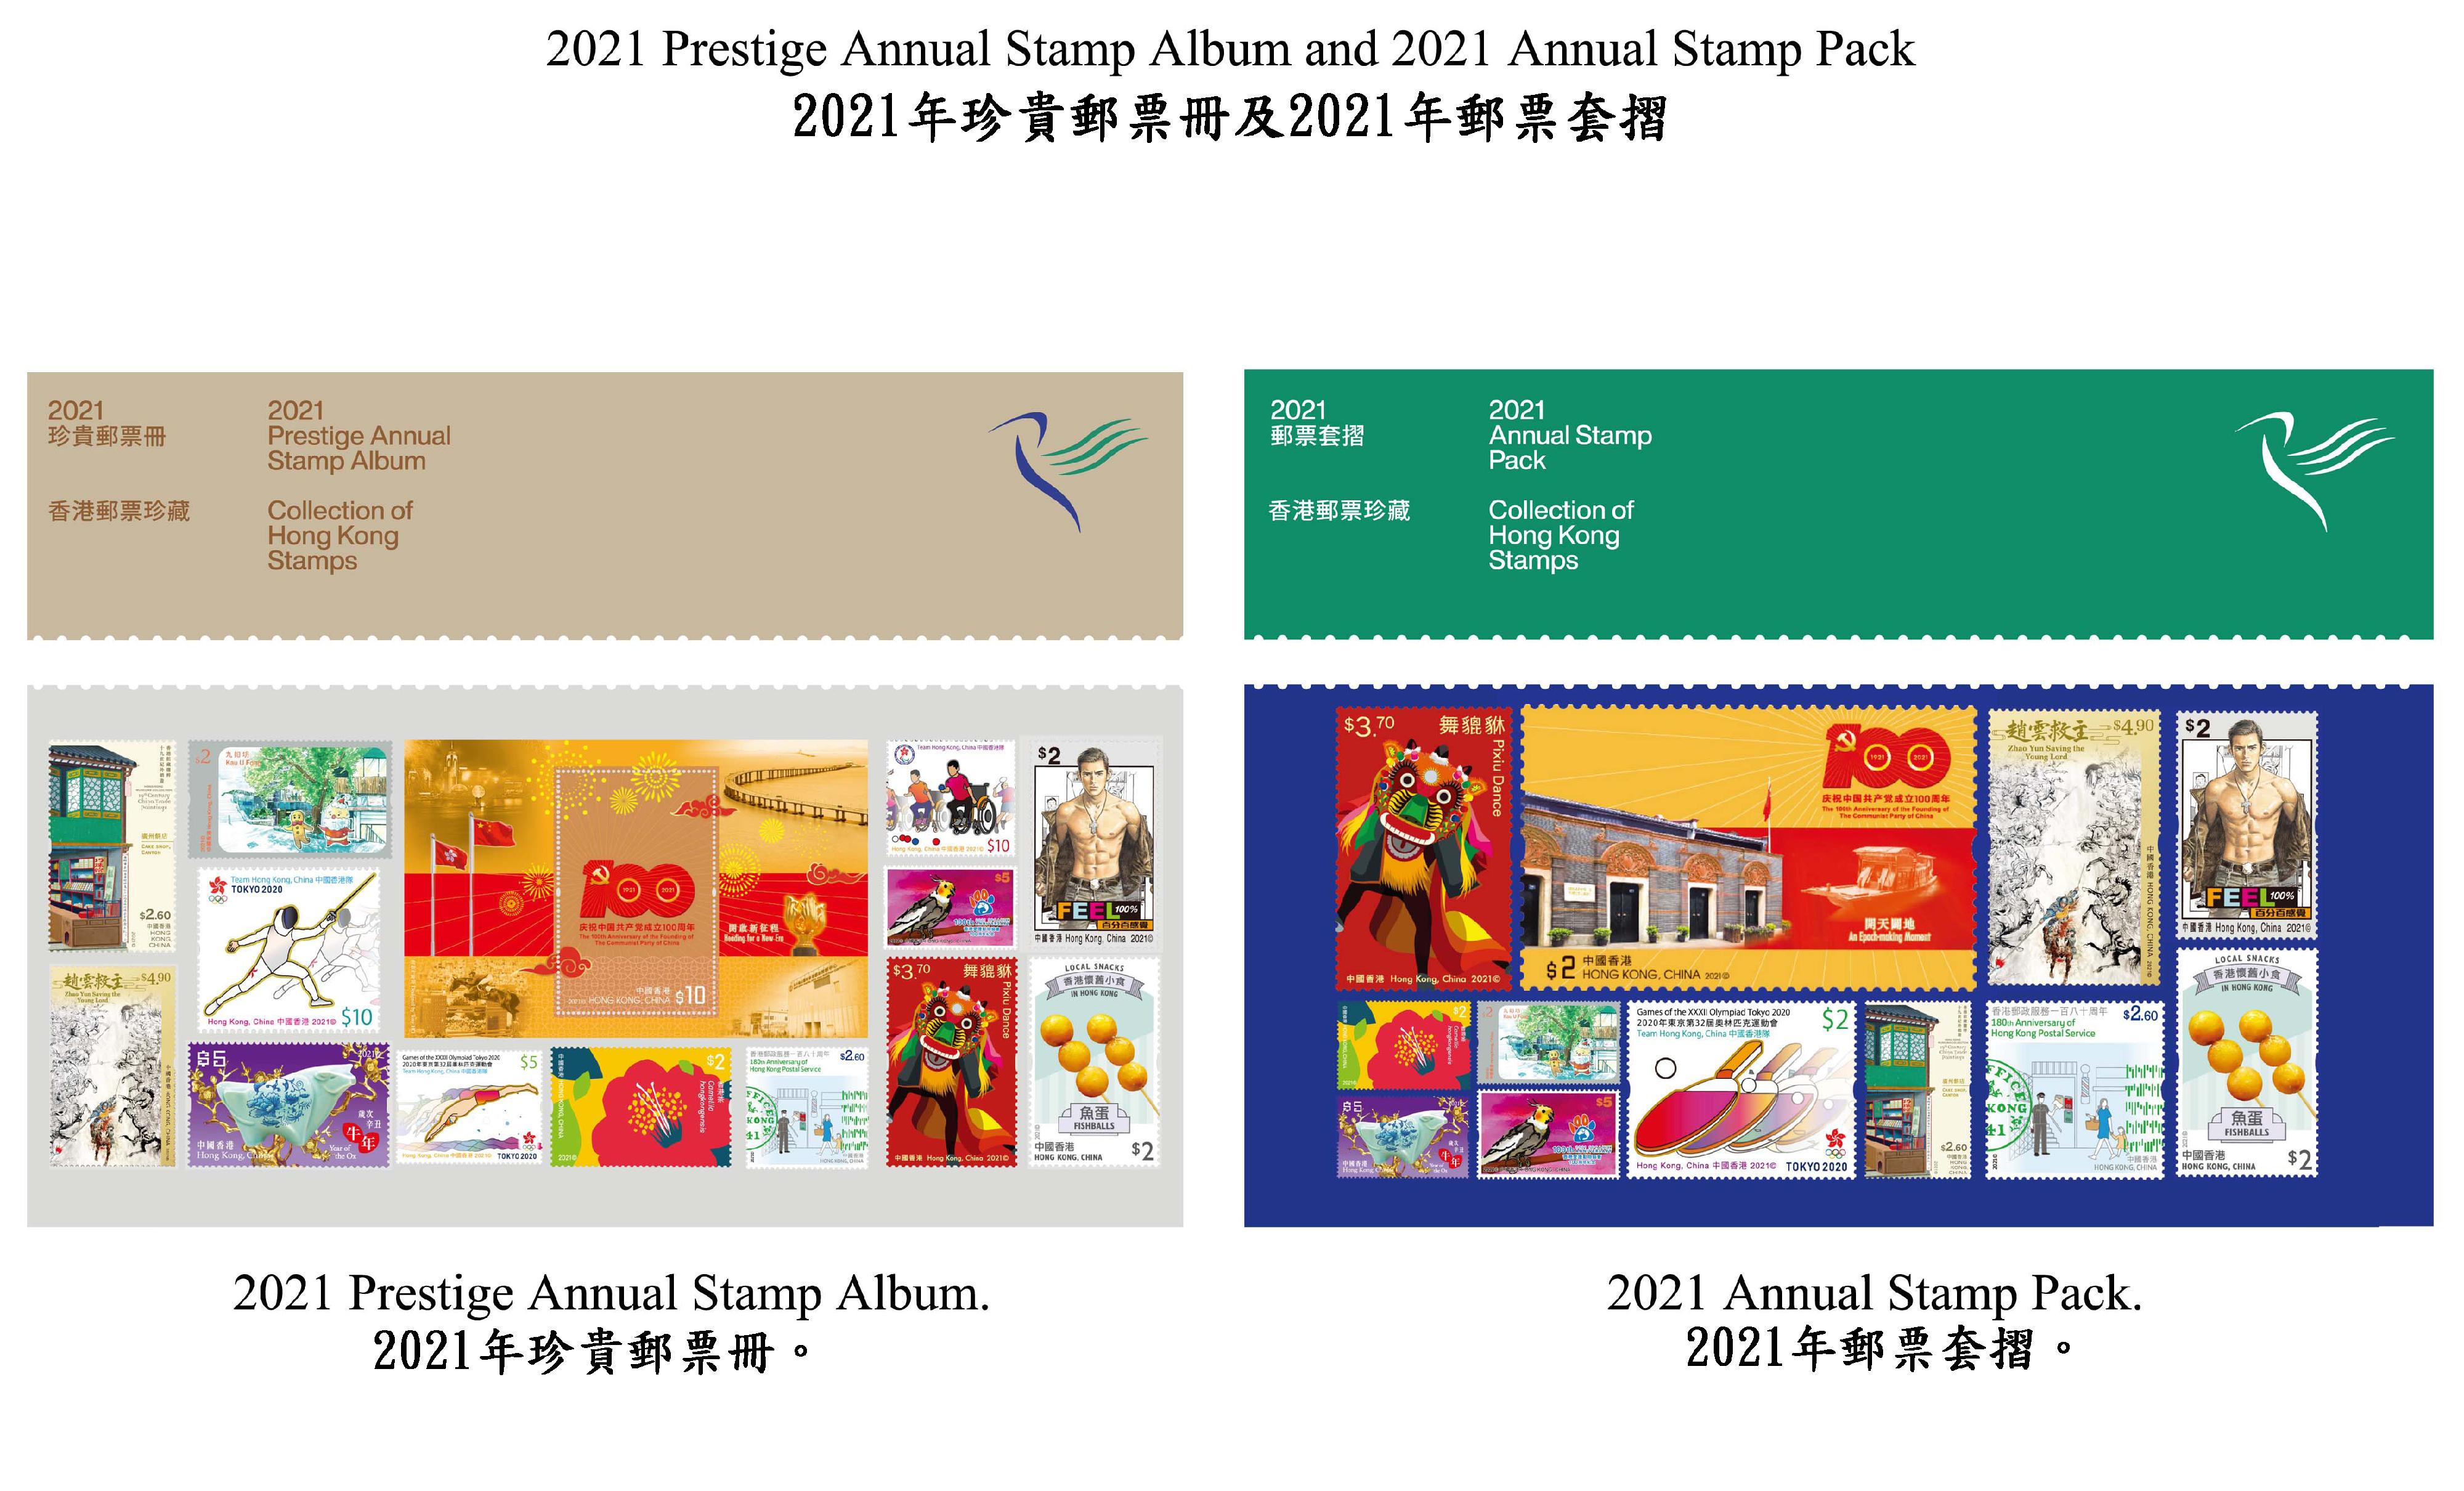 香港邮政三月三十一日（星期四）发行《2021年珍贵邮票册》及《2021年邮票套折》。图示《2021年珍贵邮票册》及《2021年邮票套折》。